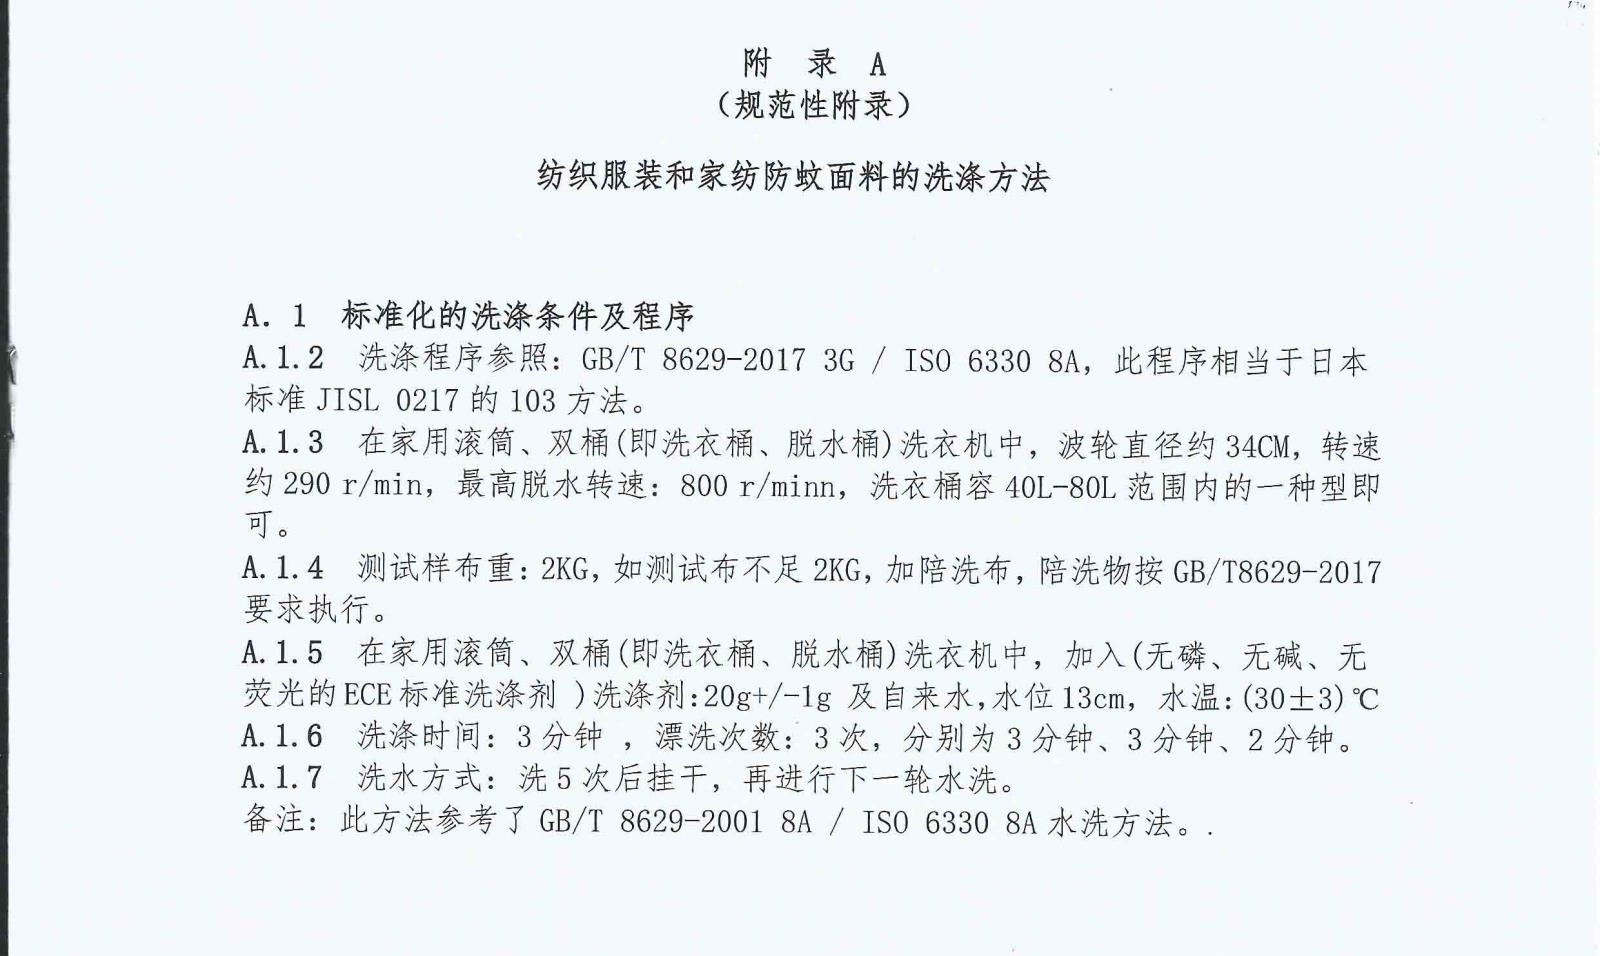 T-CTCA 3-2017 中国纺织品商业协会氯菊酯防蚊面料团体标准_页面_6.jpg